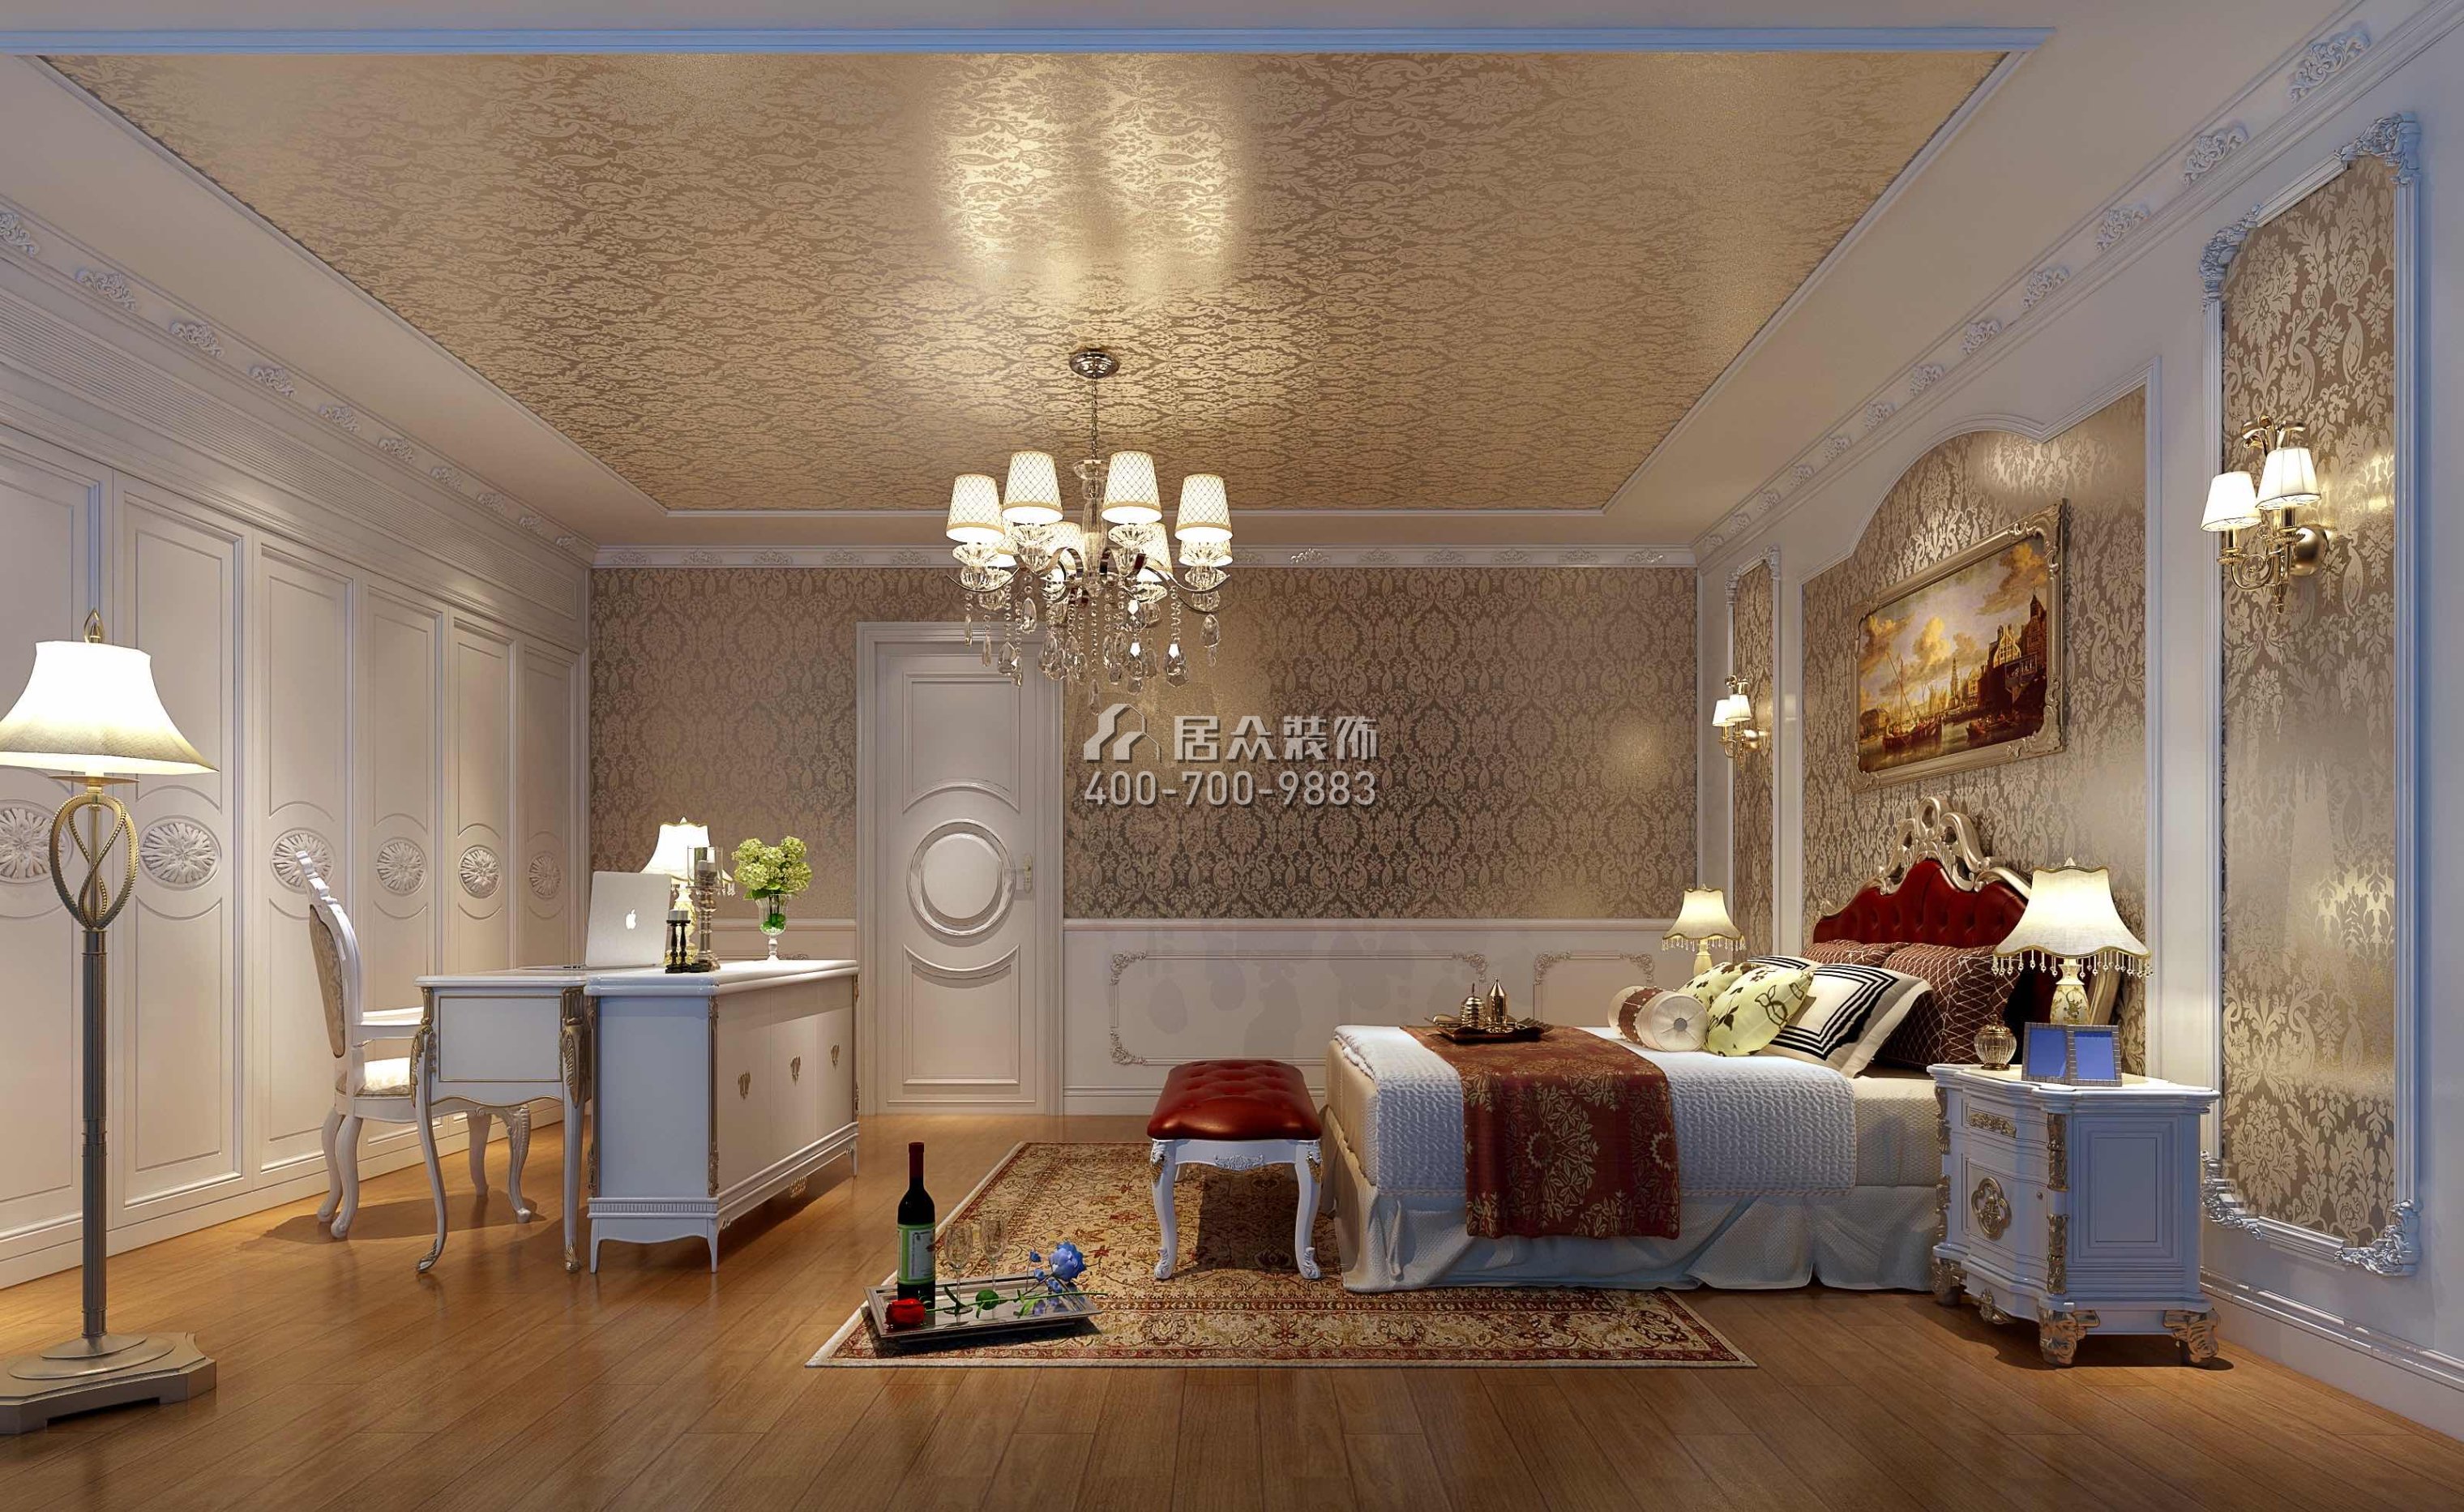 仁山智水花园500平方米欧式风格别墅户型卧室装修效果图